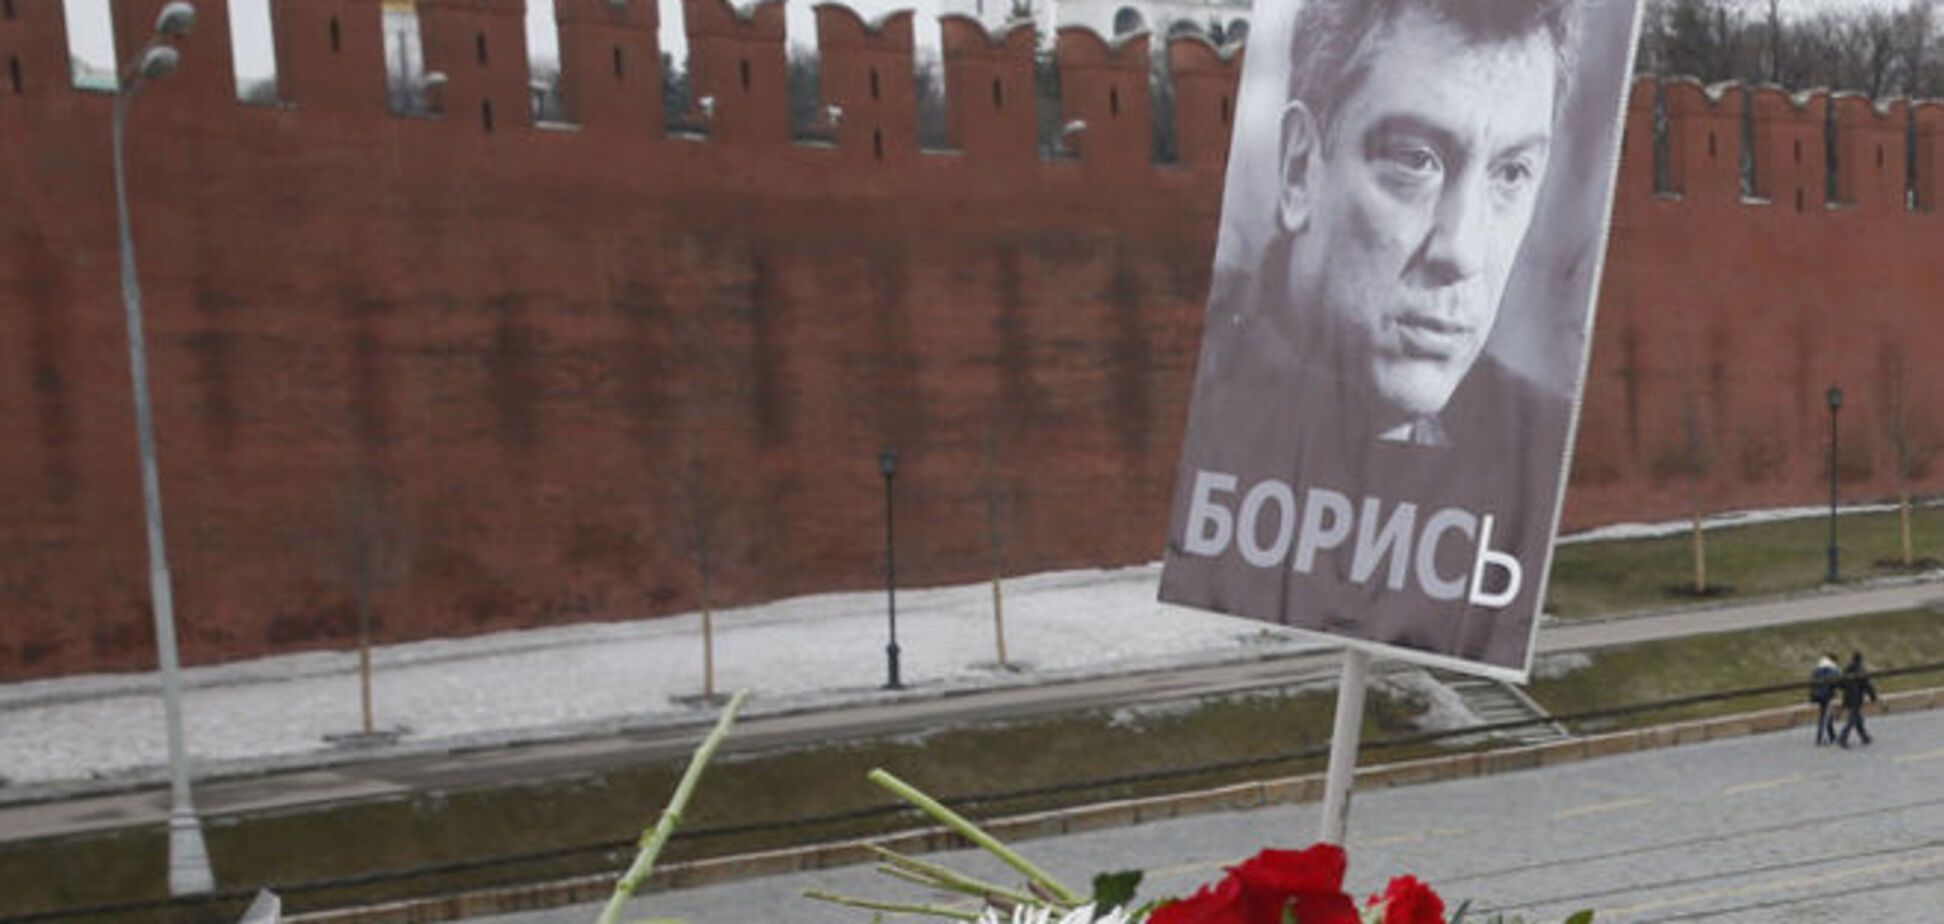 Немцова убили из-за негативных высказываний о мусульманах?